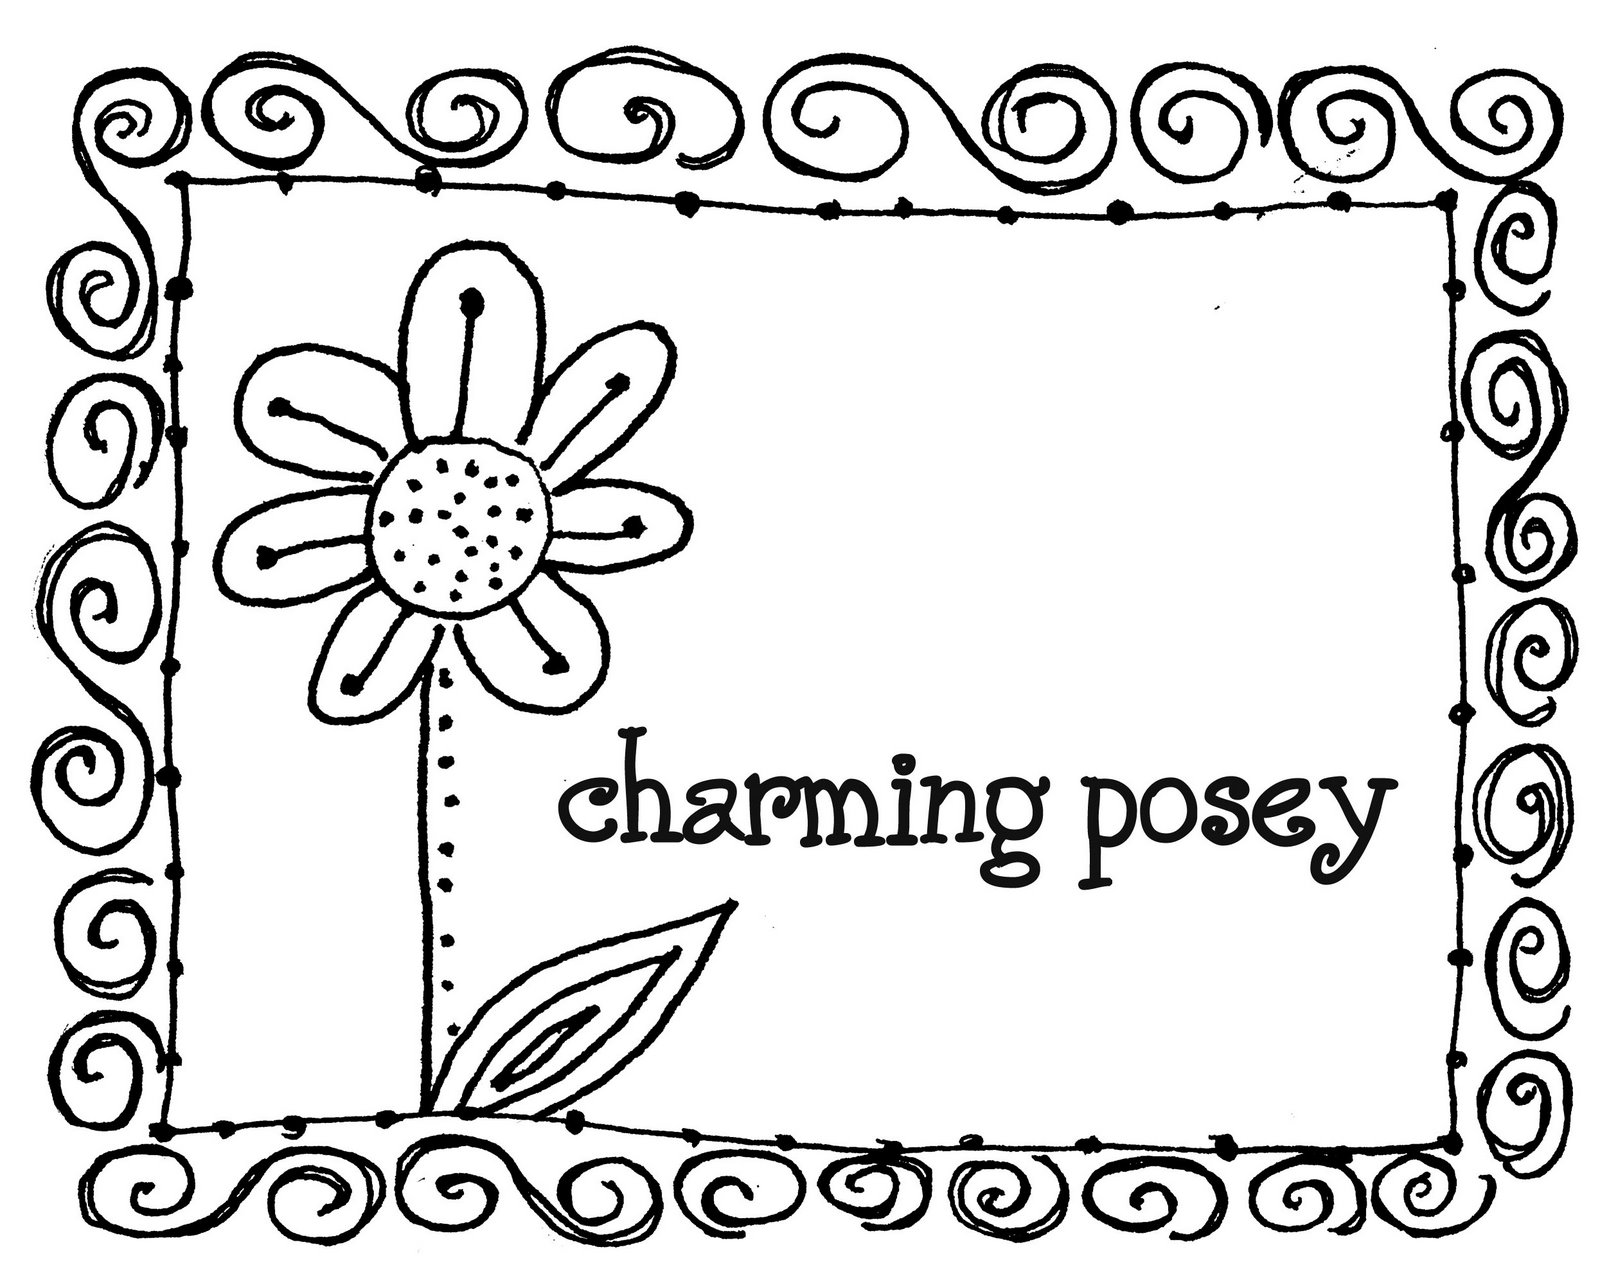 Charming Posey